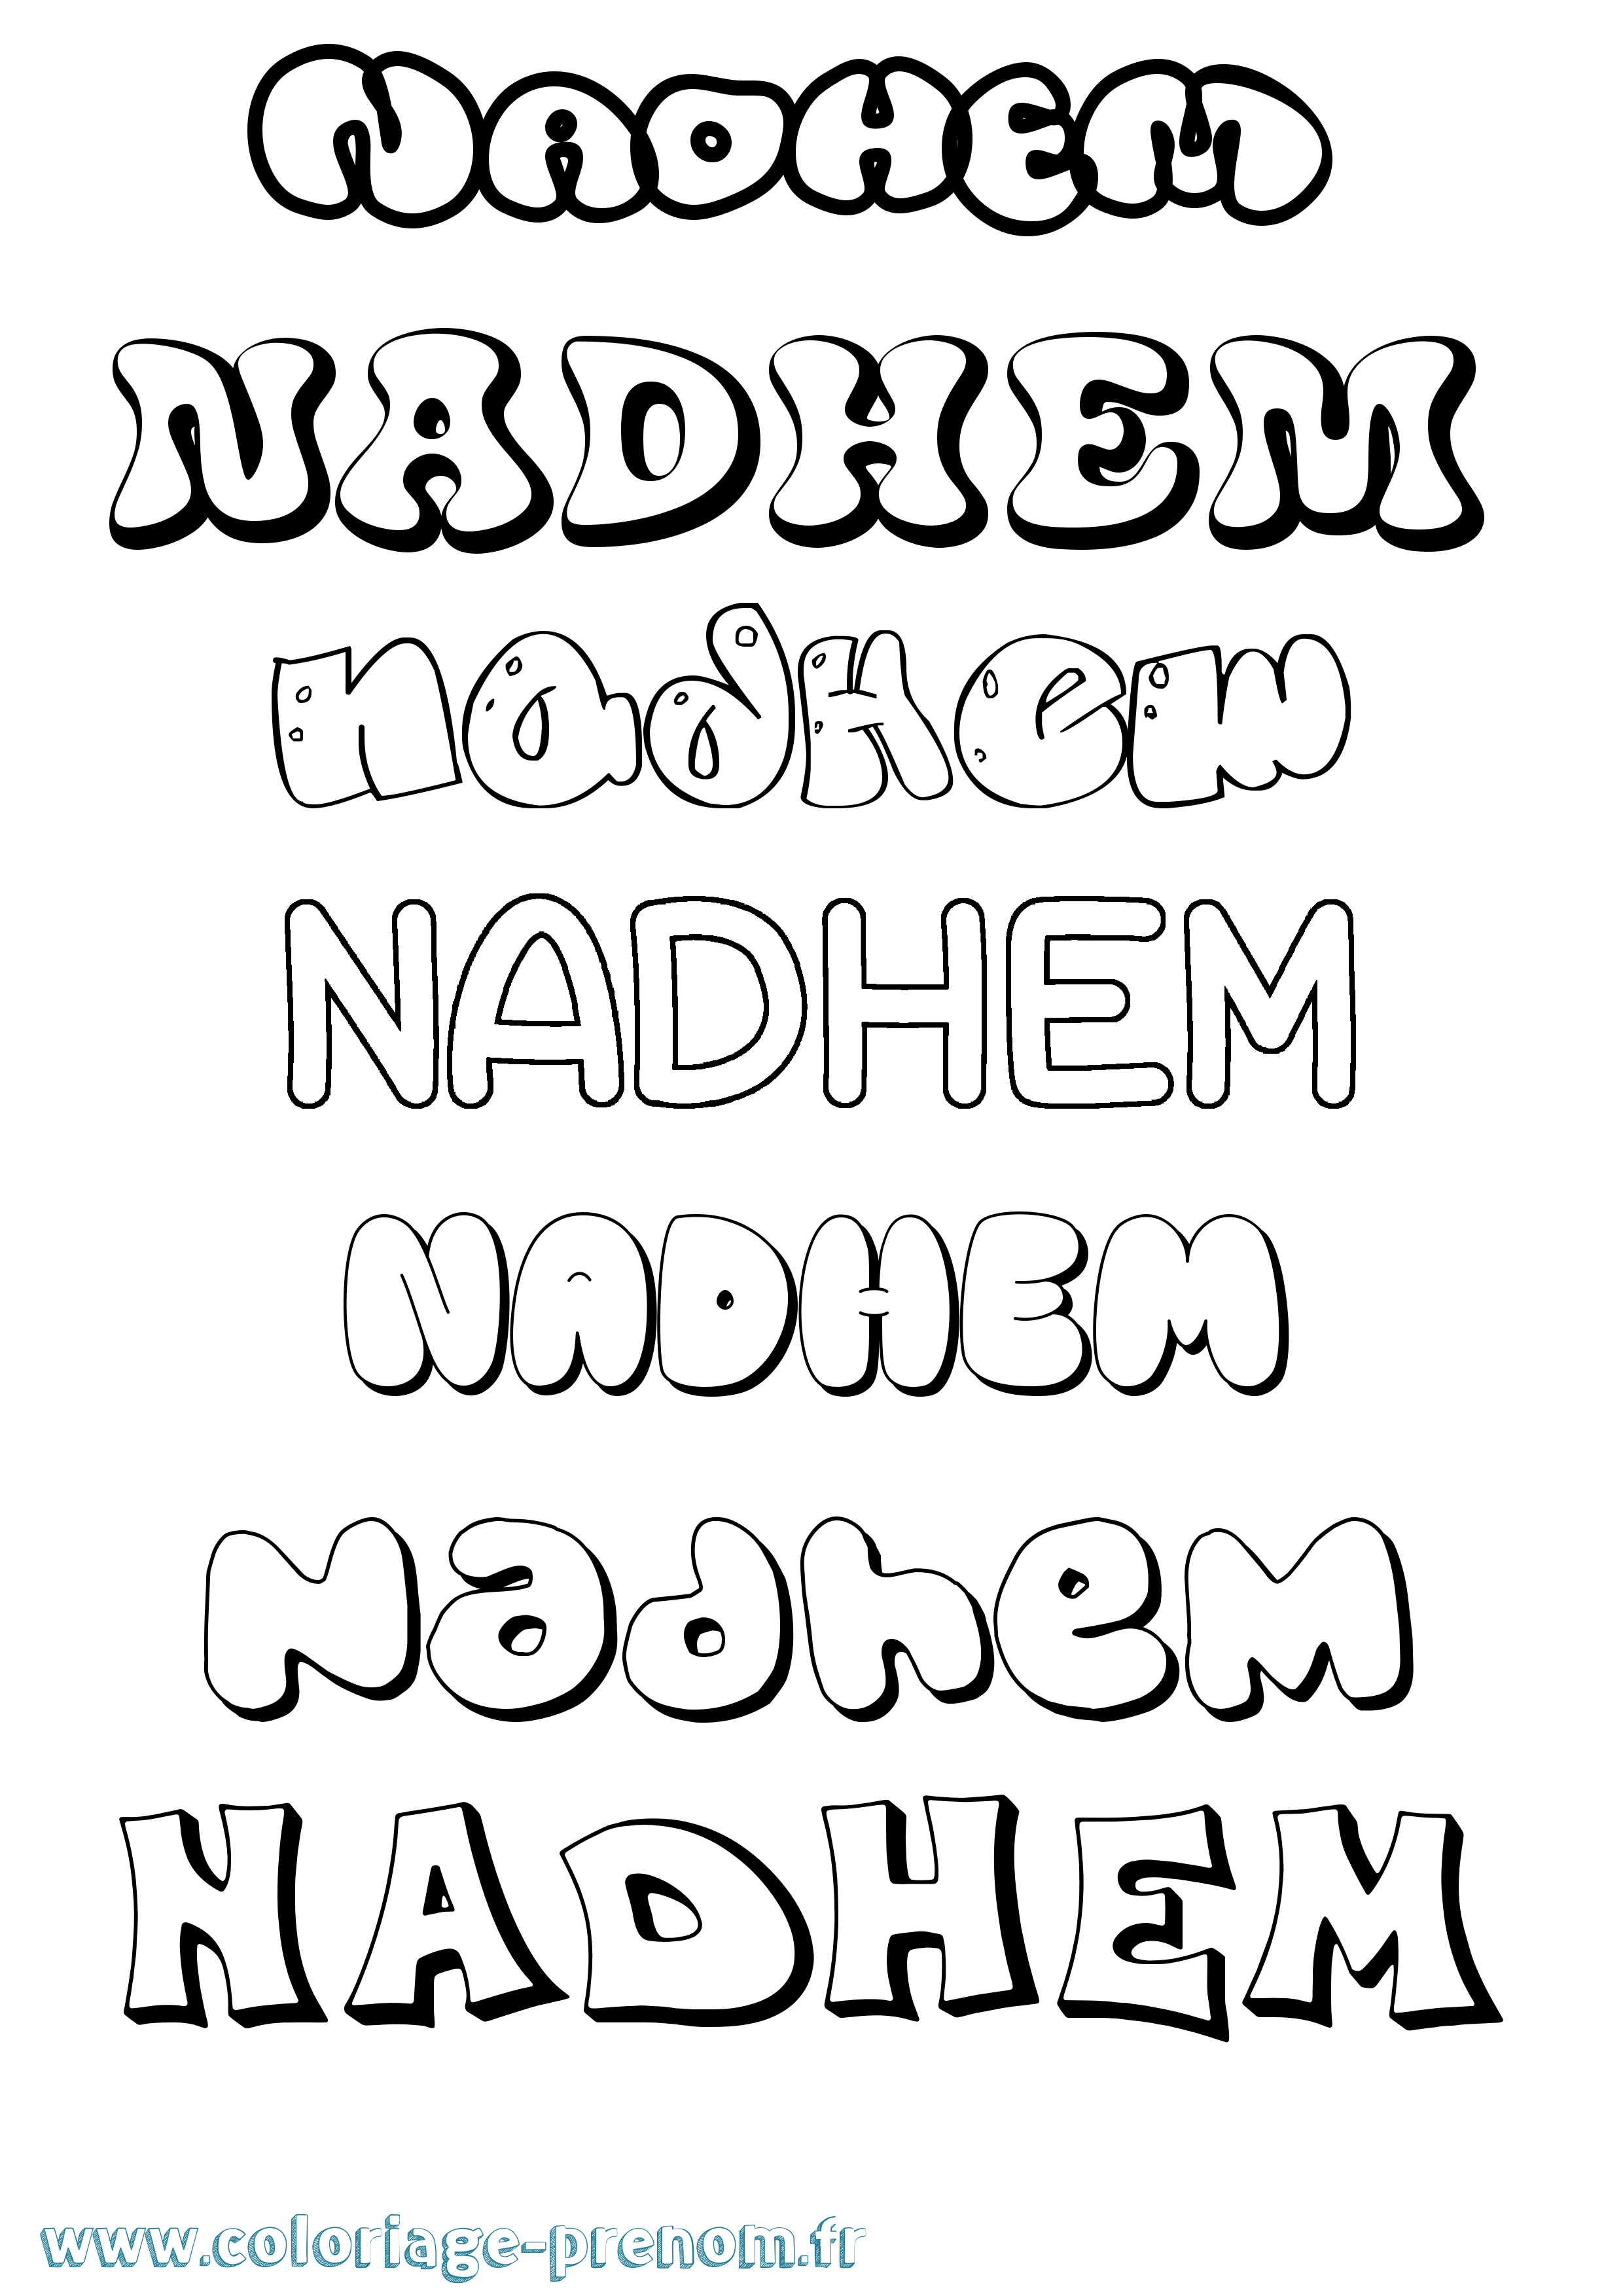 Coloriage prénom Nadhem Bubble